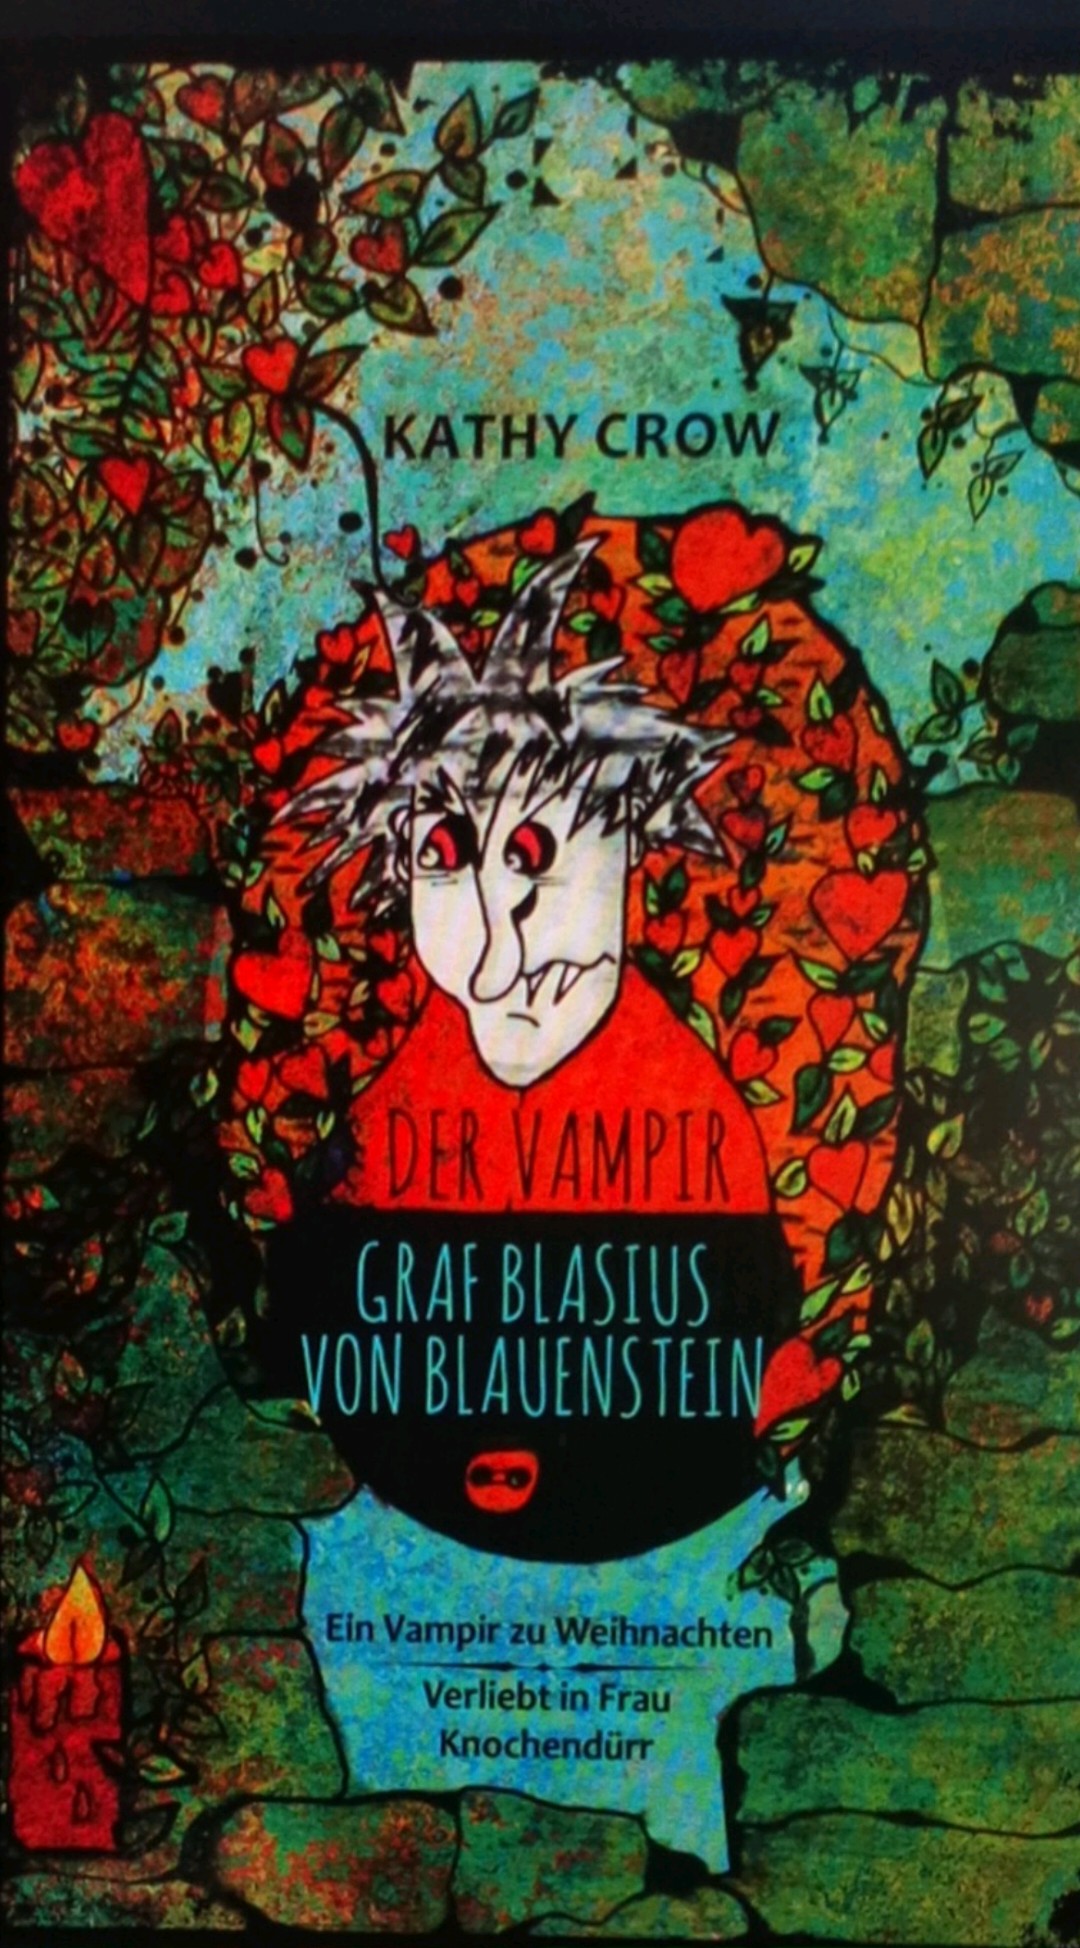 Das Buch ist überall im Buchhandel und Online zu bestellen. 
Der Vampir Graf Blasius von Blauenstein, Zwei Geschichten in einem Buch. Die lustig und spannend zugleich sind. 